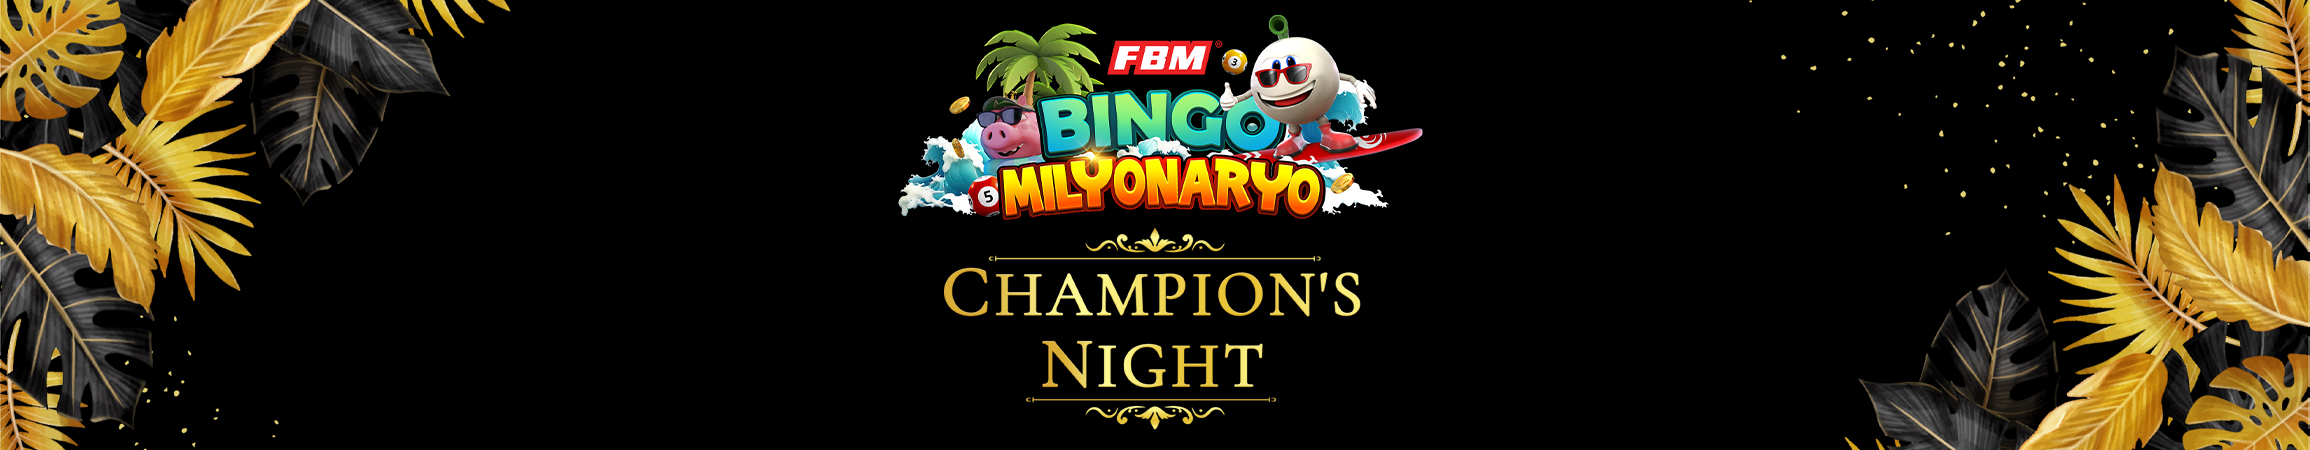 Champion’s Night: celebrando el éxito de Bingo Milyonaryo con un gran anuncio